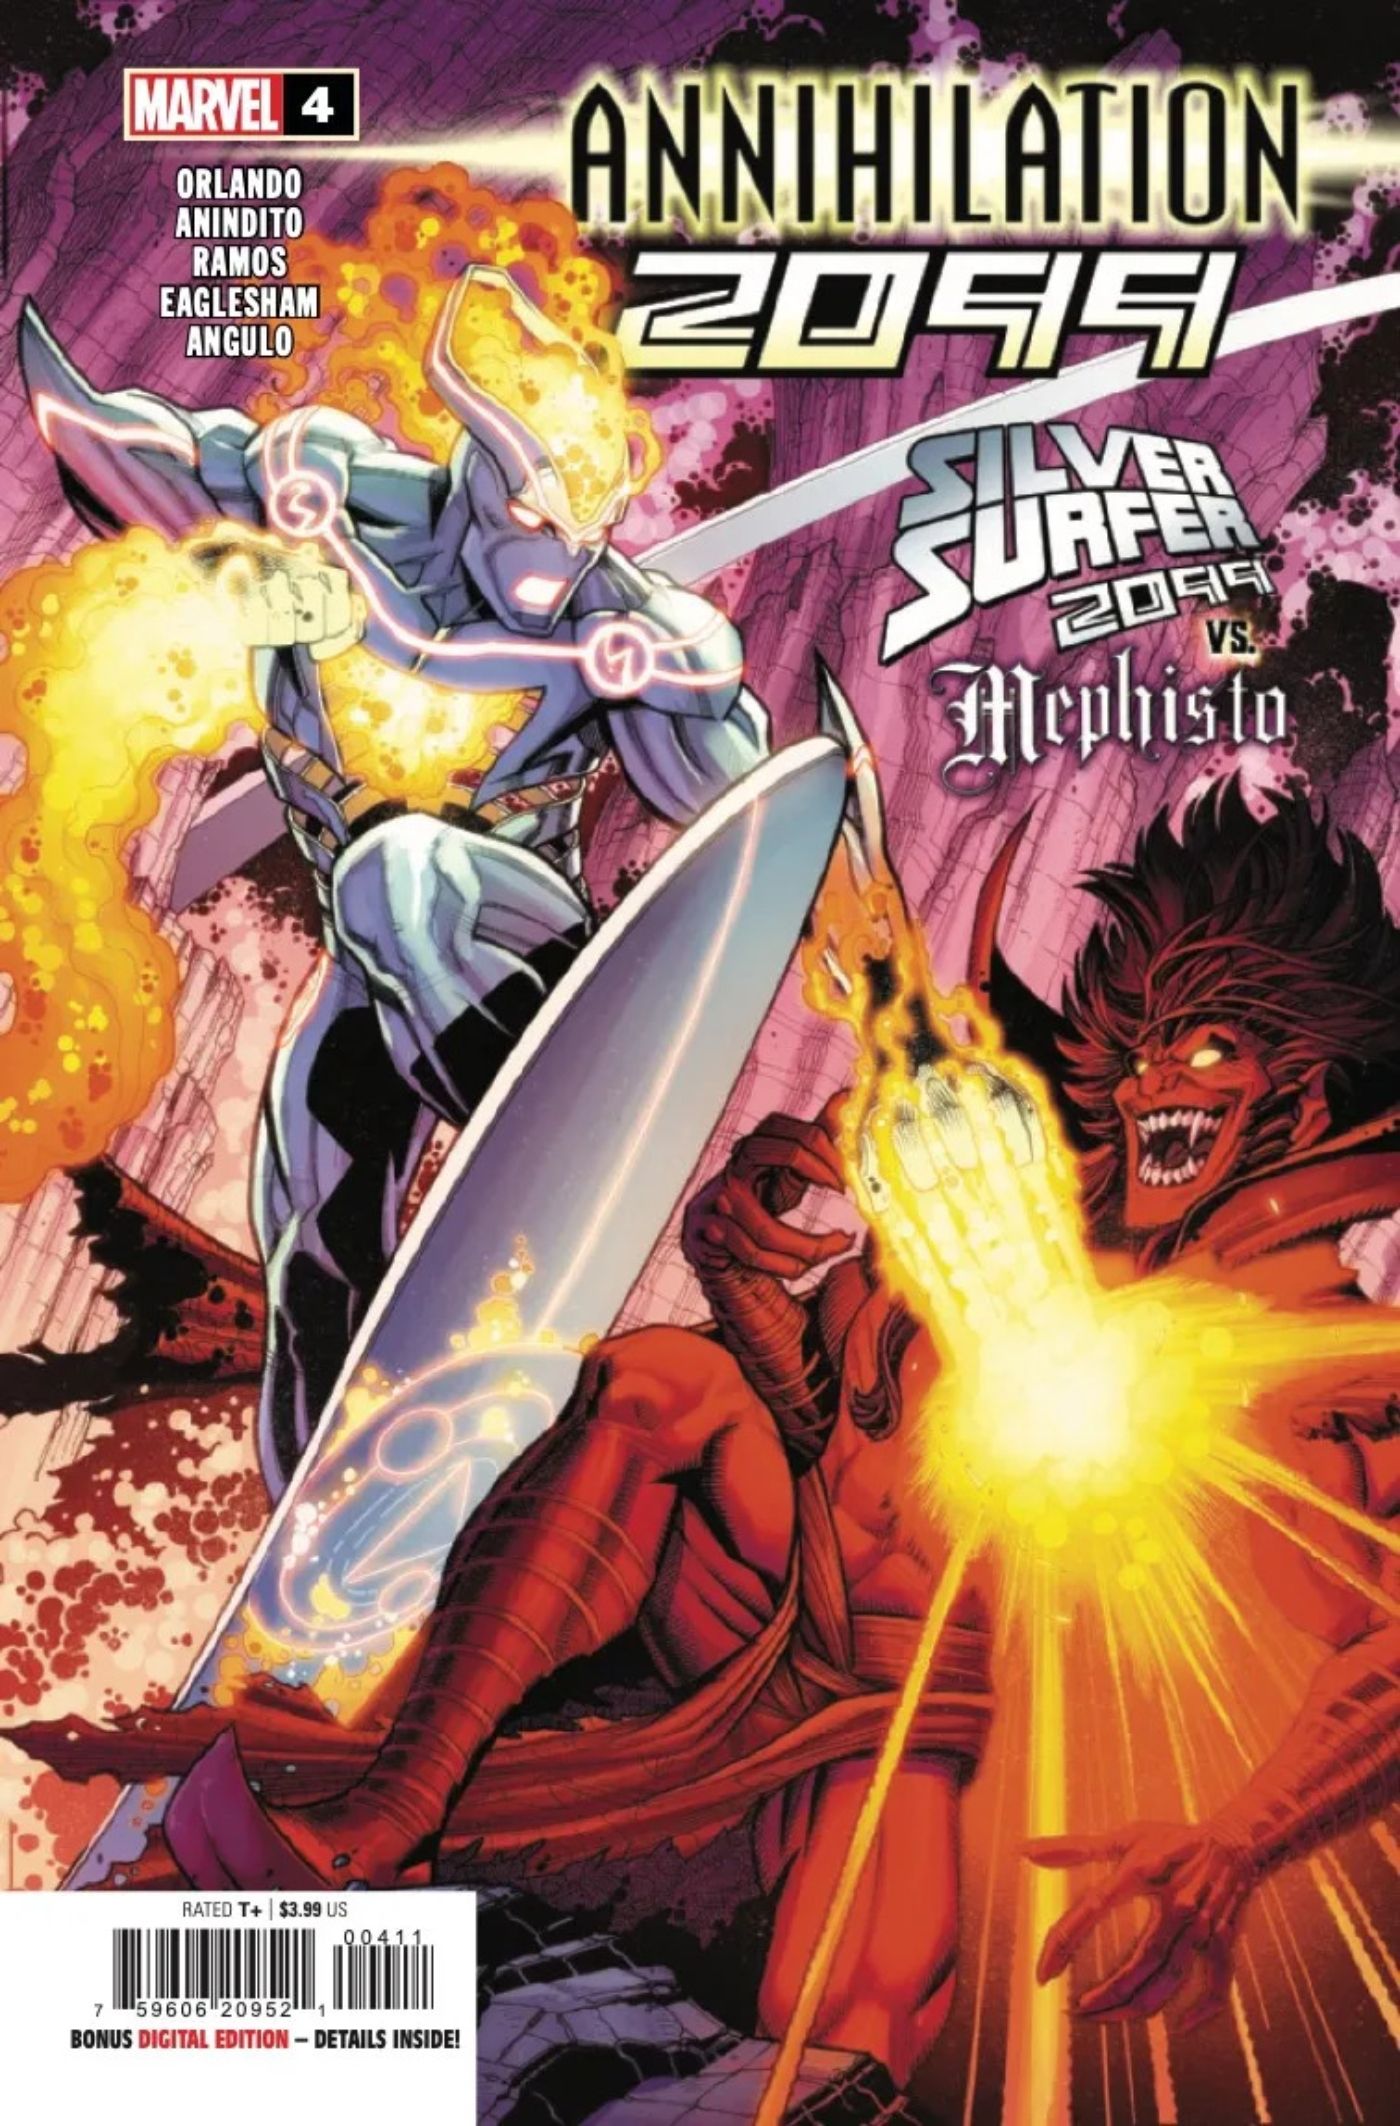 Capa da revista Annihilation 2099 #4 com o Surfista Prateado lutando contra Mephisto.